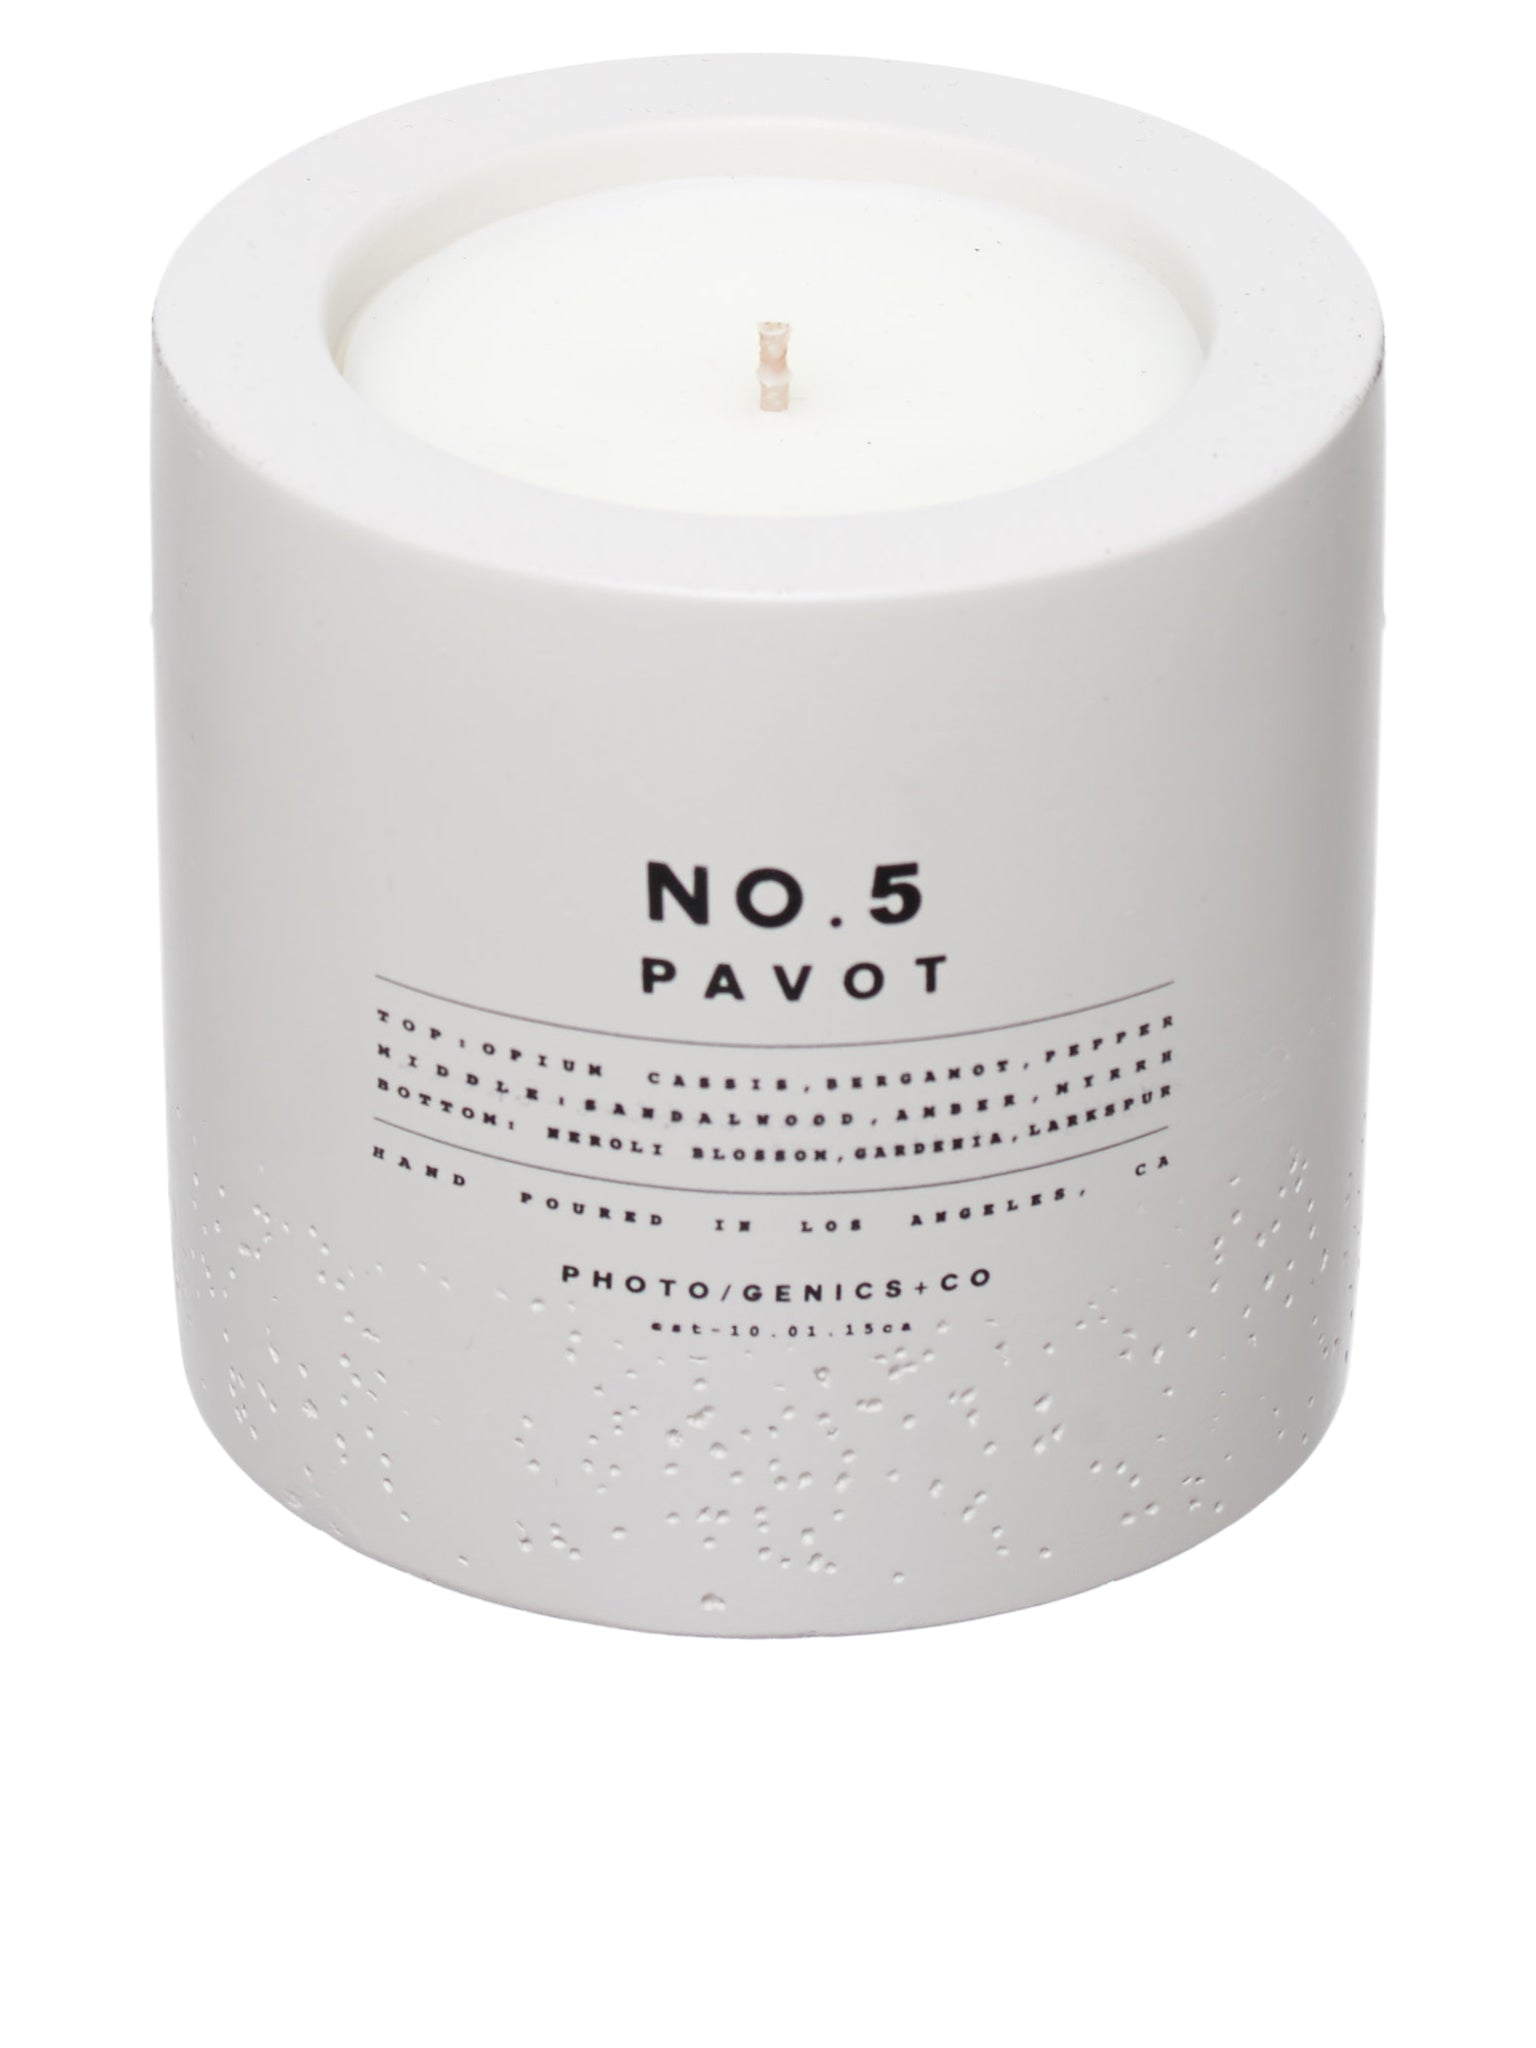 No. 5 Pavot Concrete Candle (PGCOACCL5-9-OZ-PAVOT)